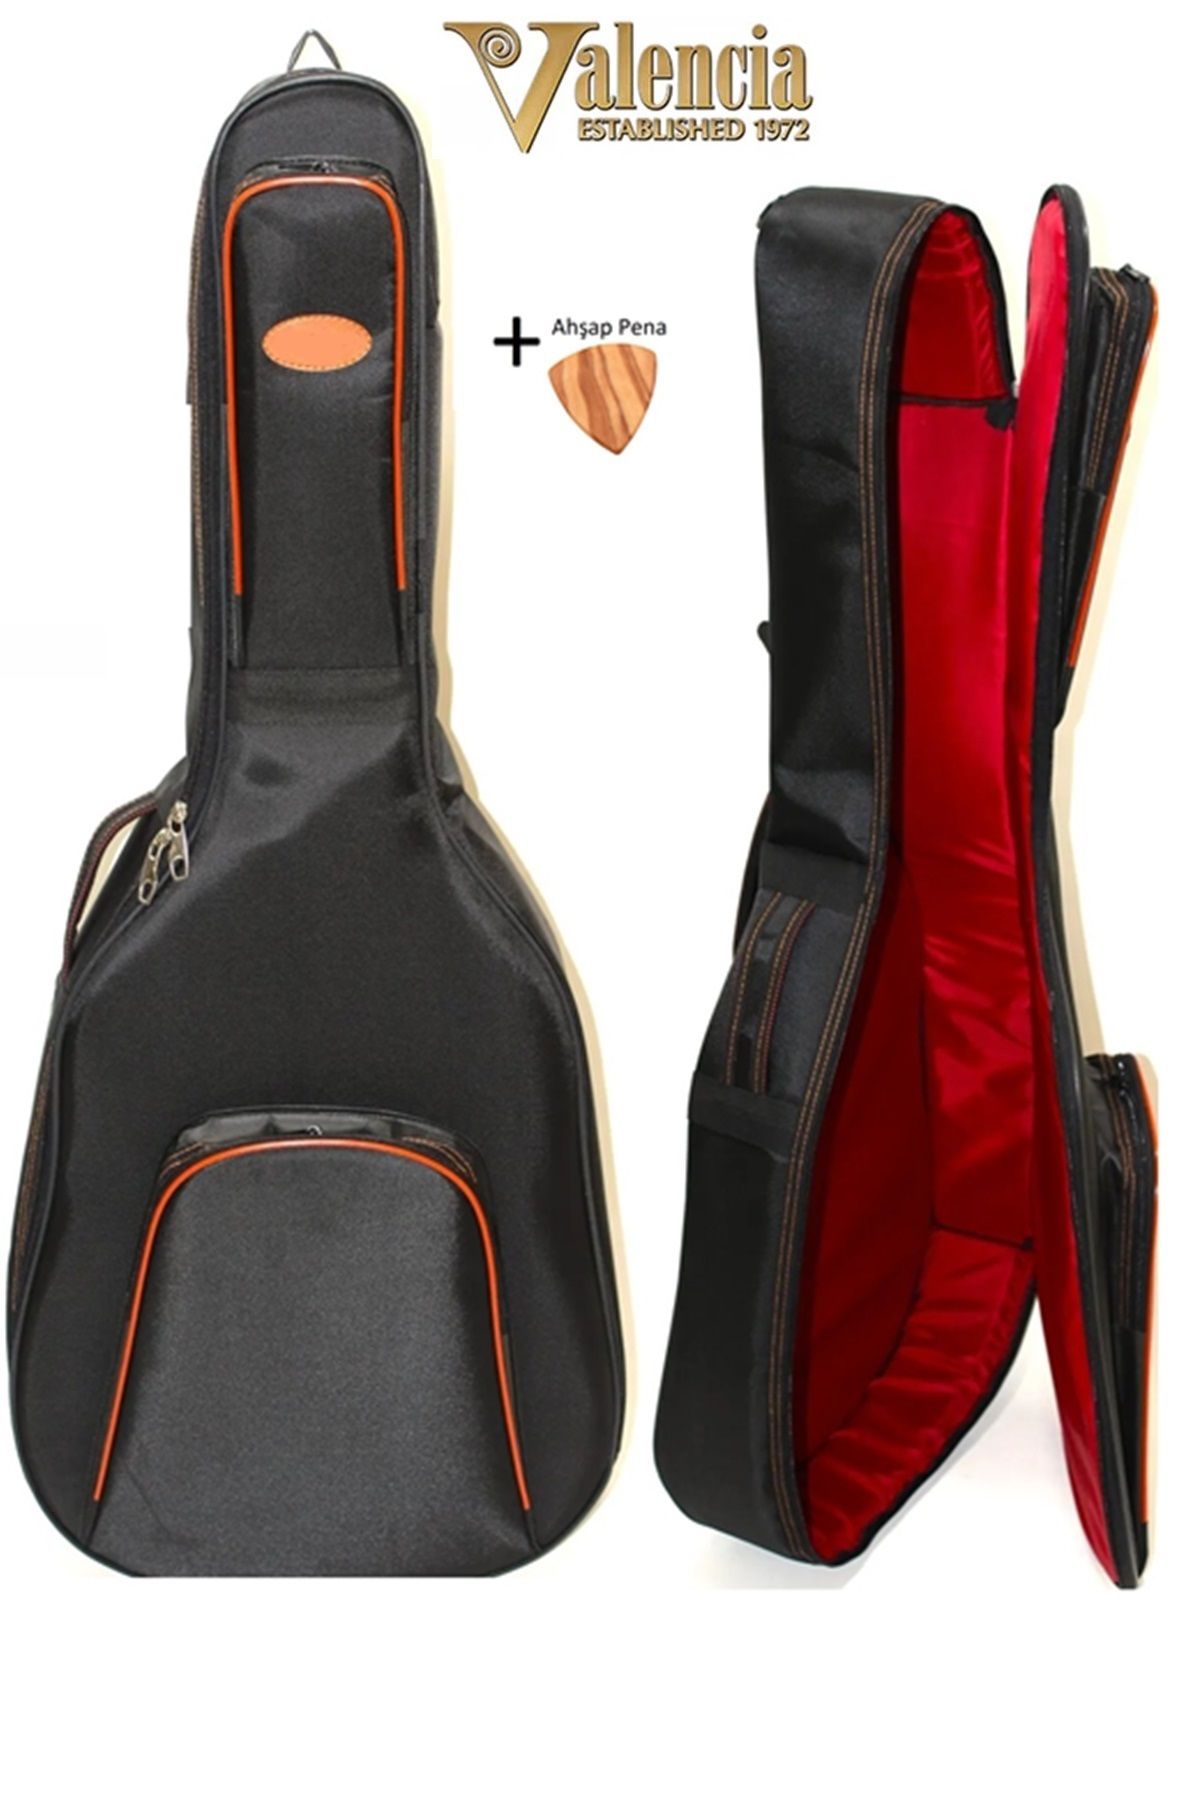 VALENCIA Uyumlu Klasik Gitar Kılıfı Taşıma Çantası Gigbag Soft Case - 4/4 Tam Boy Için Uygun